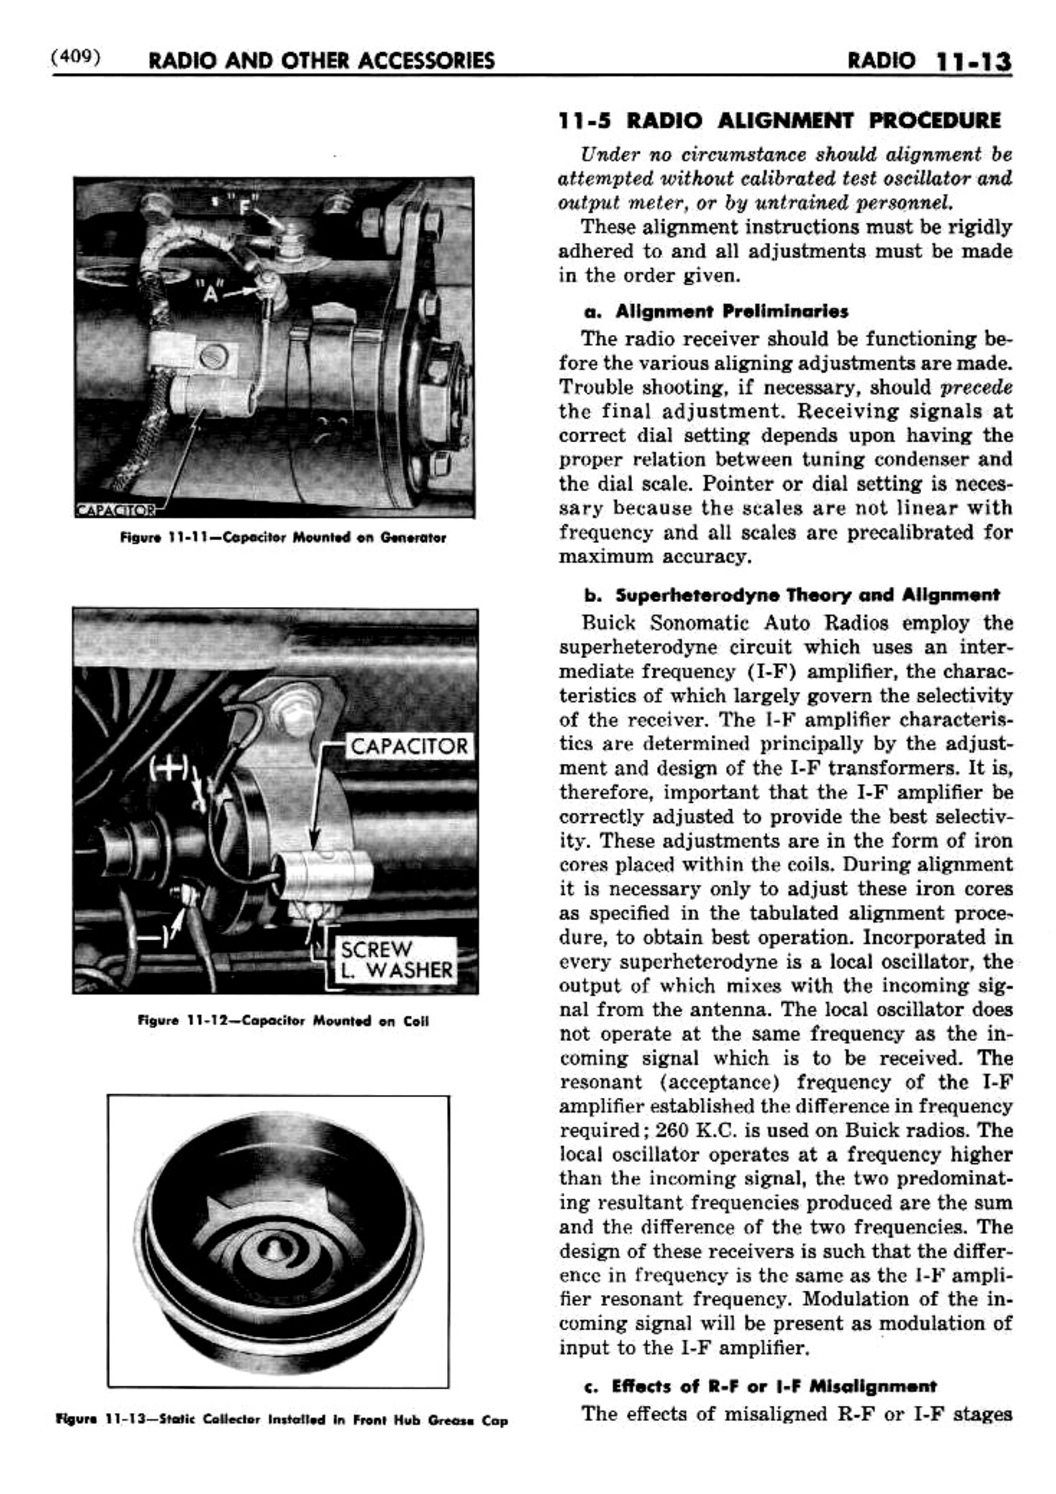 n_12 1948 Buick Shop Manual - Accessories-013-013.jpg